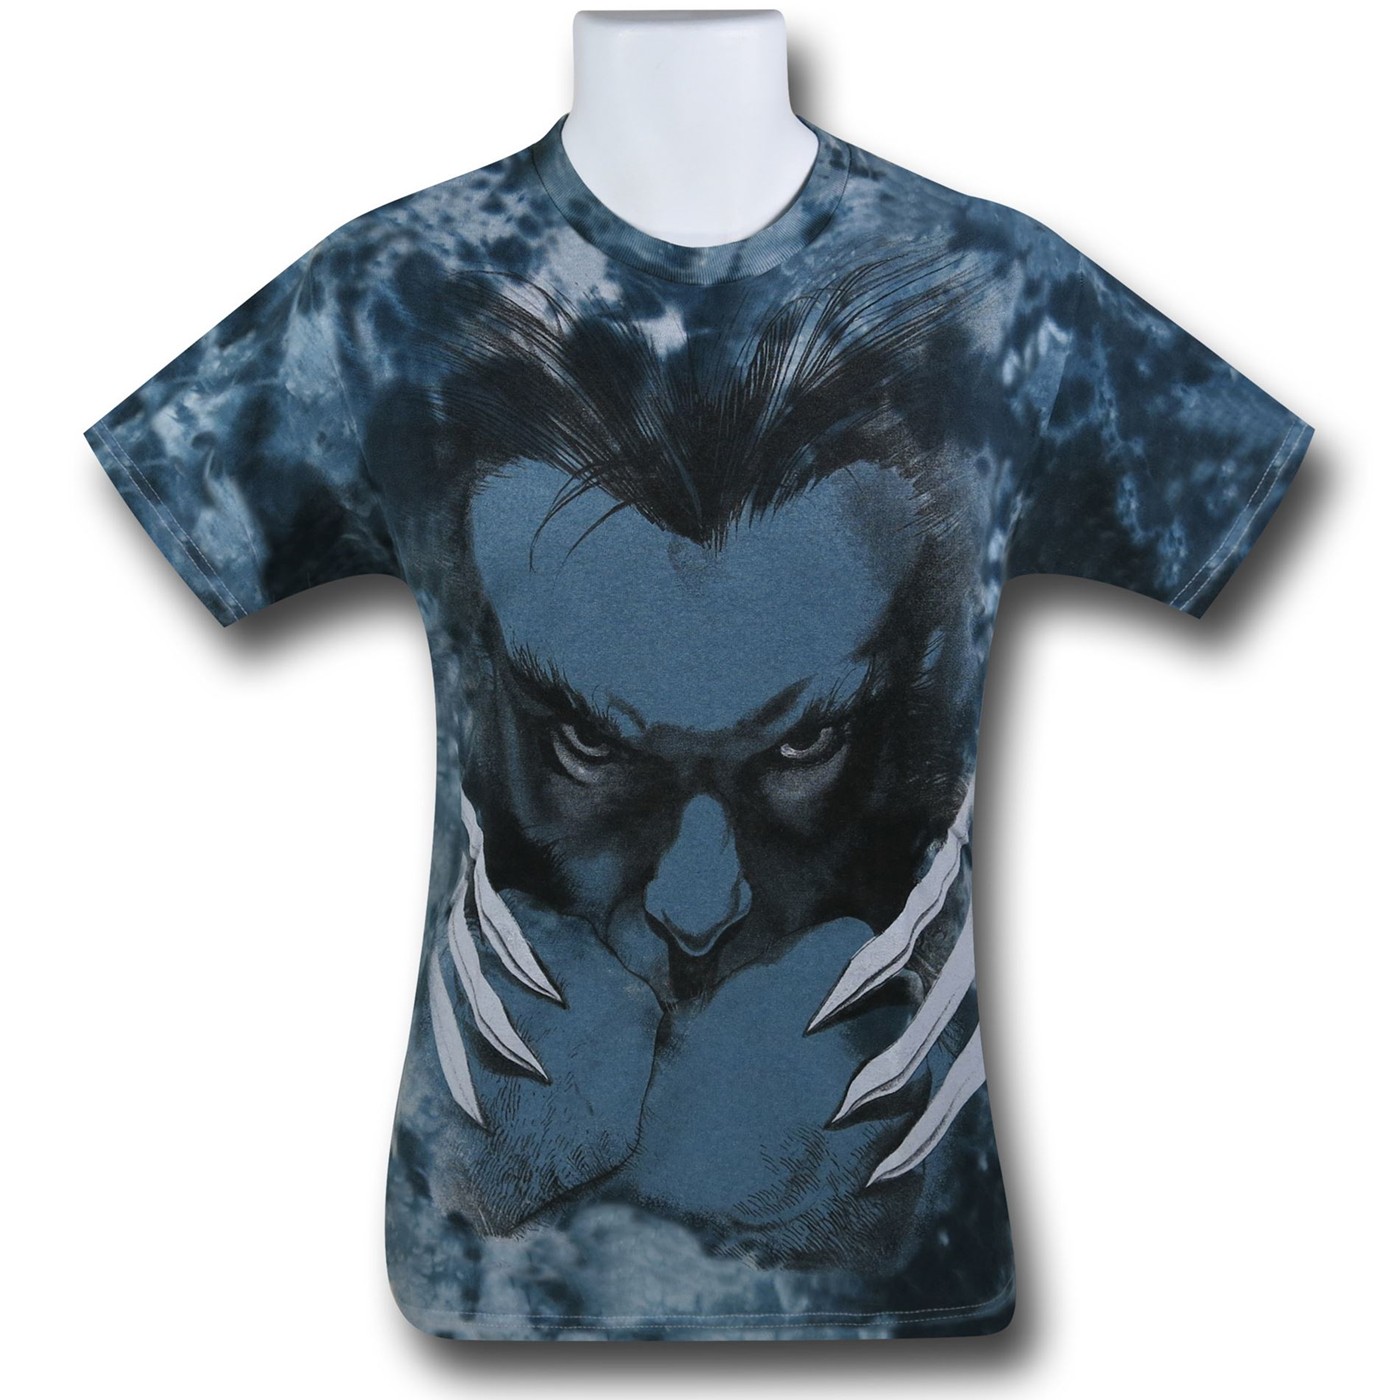 Wolverine Tie-Dye T-Shirt